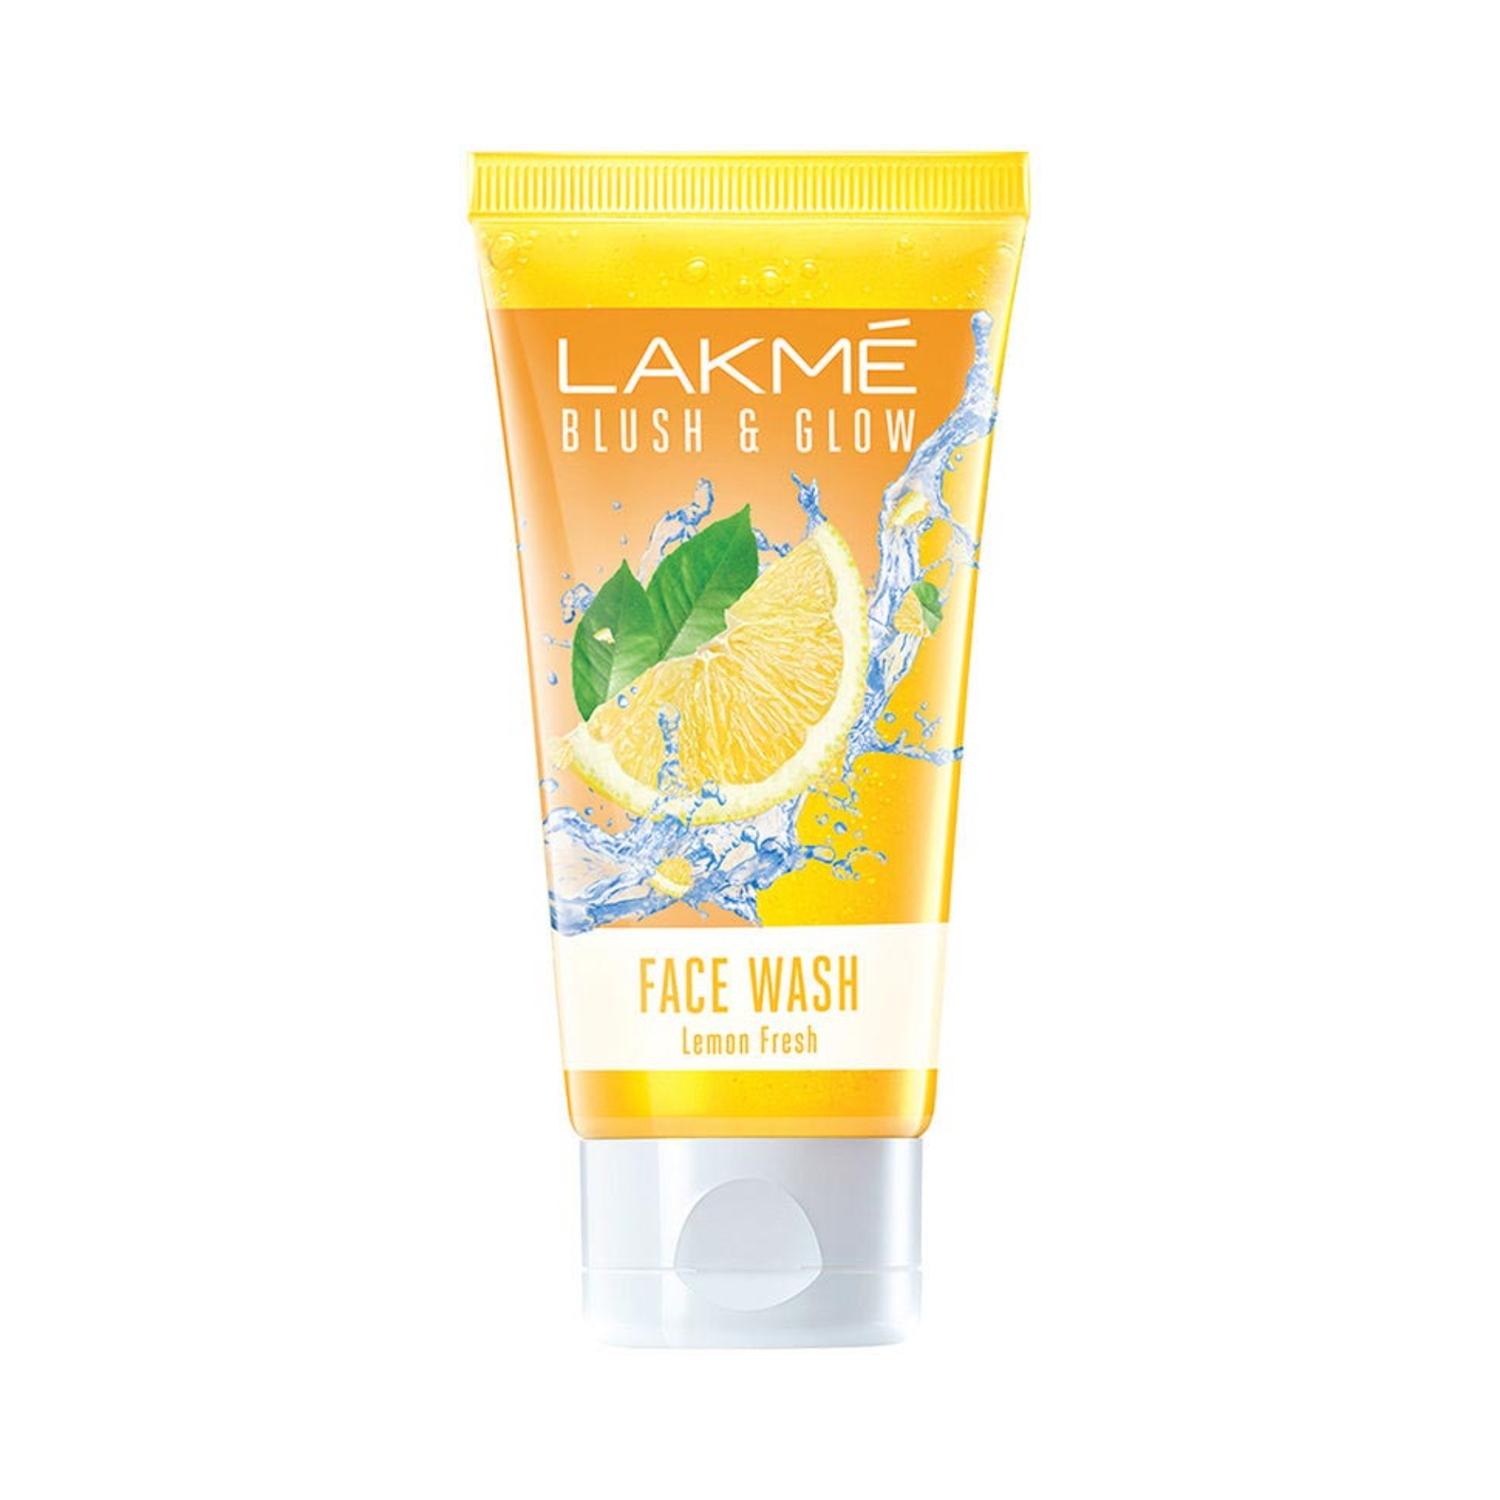 lakme blush & glow lemon freshness gel face wash with lemon extracts (100g)